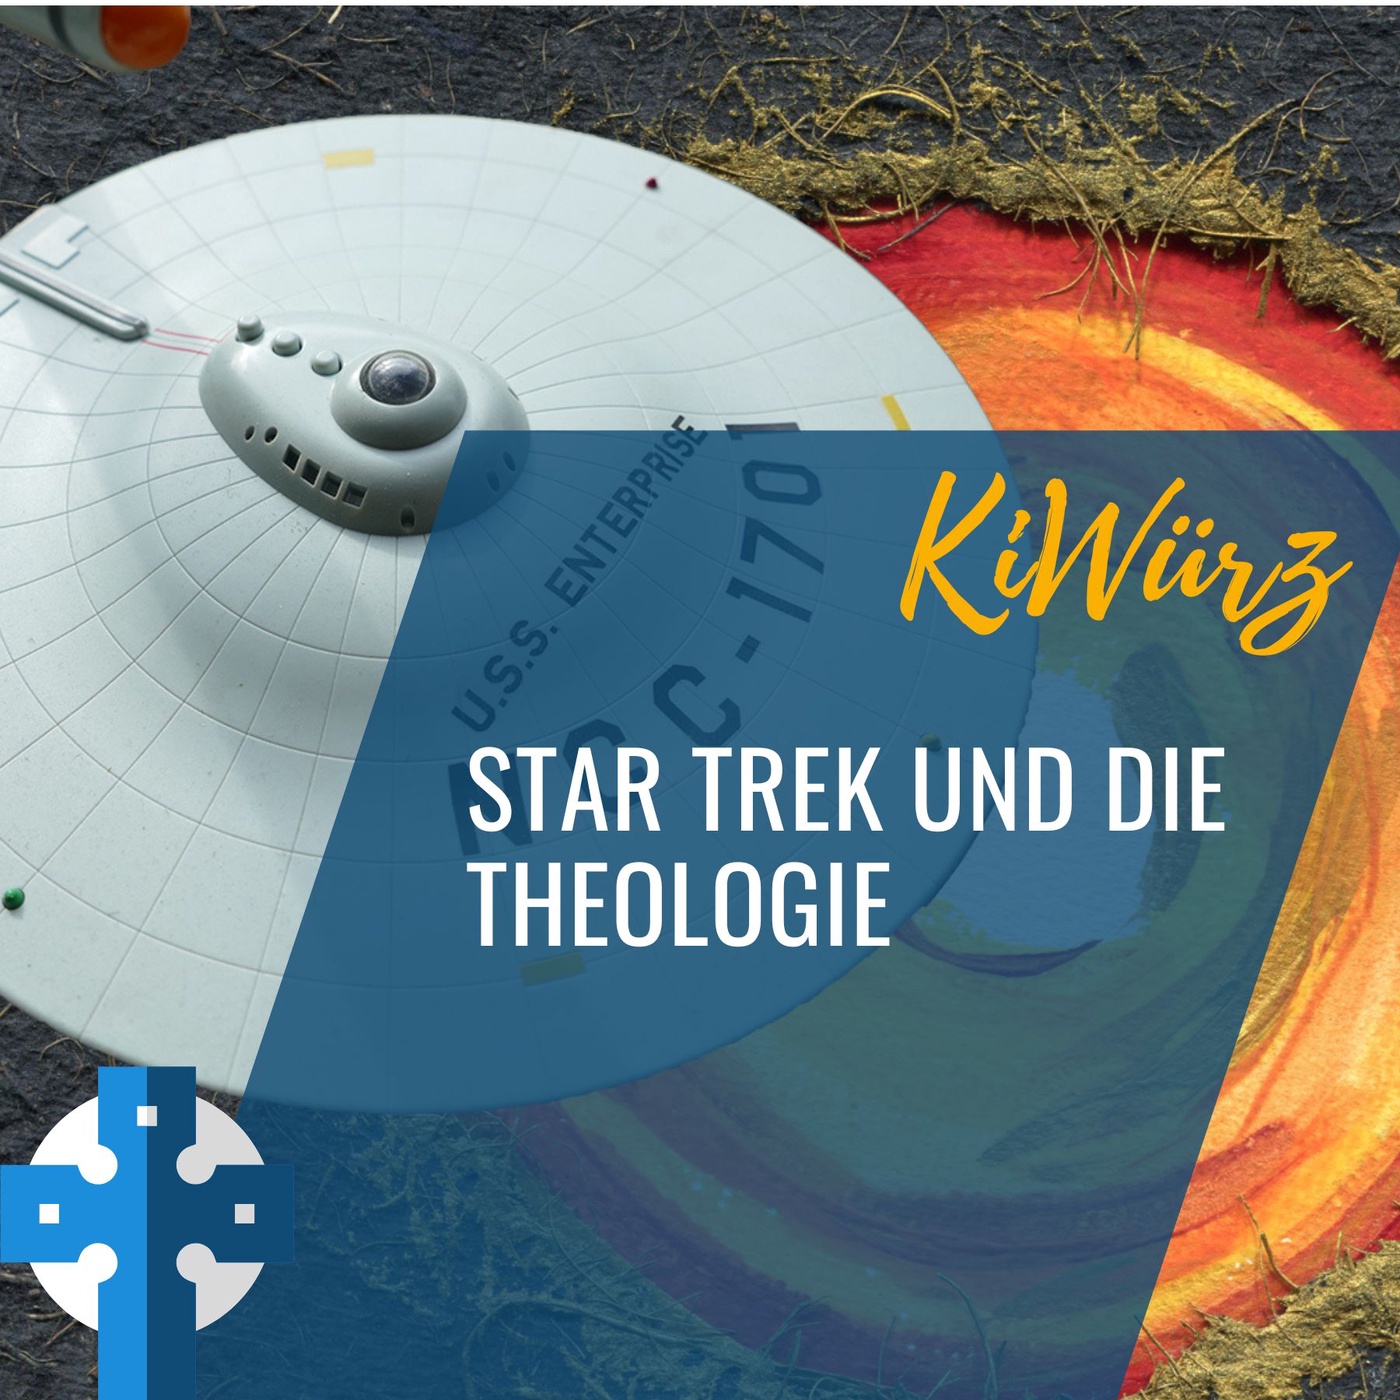 Star Trek und die Theologie